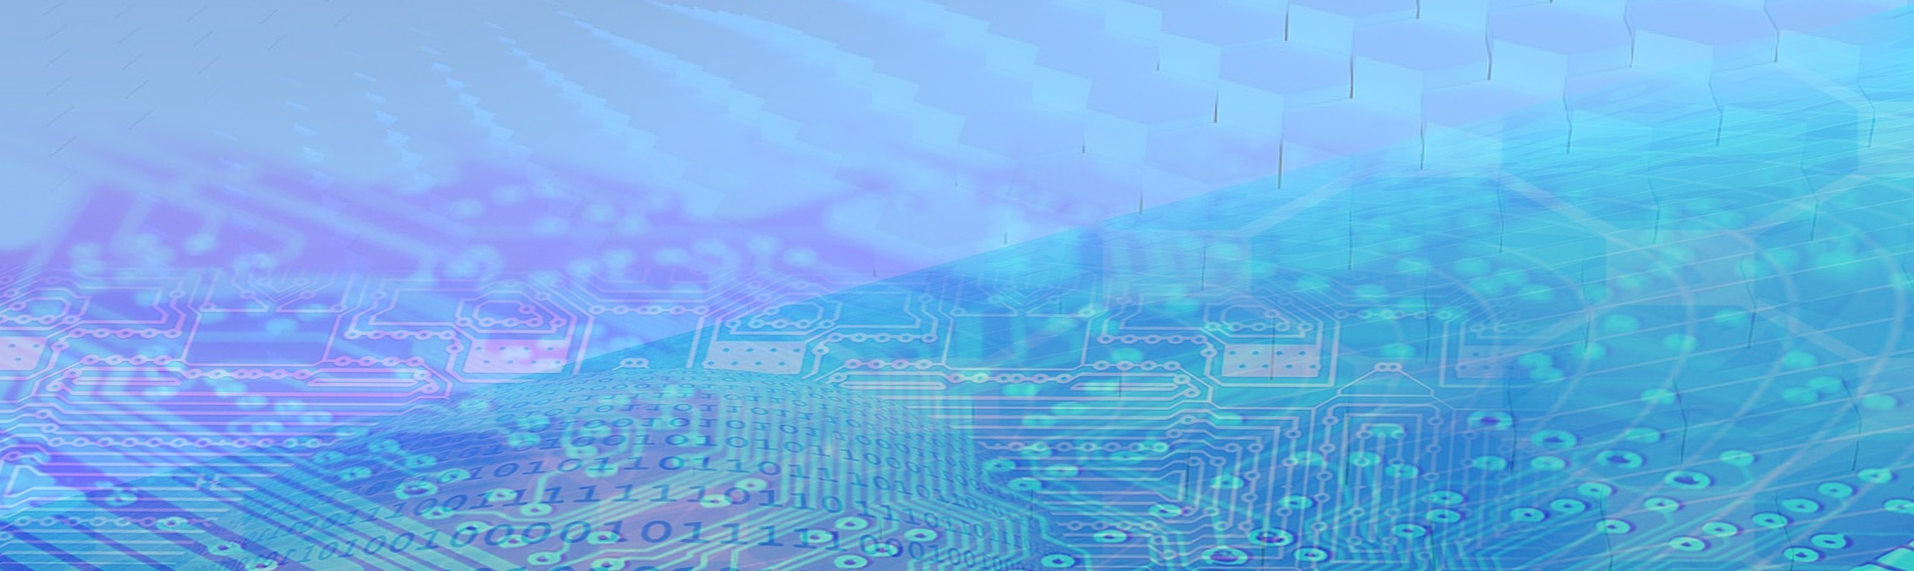 En illustrerad bild, helt blå och lika, ser futuristisk ut. Data chip går i olika nyanser av blå, lila och blå över hela skärmen som tillsammans skapar omslagsbilden. 